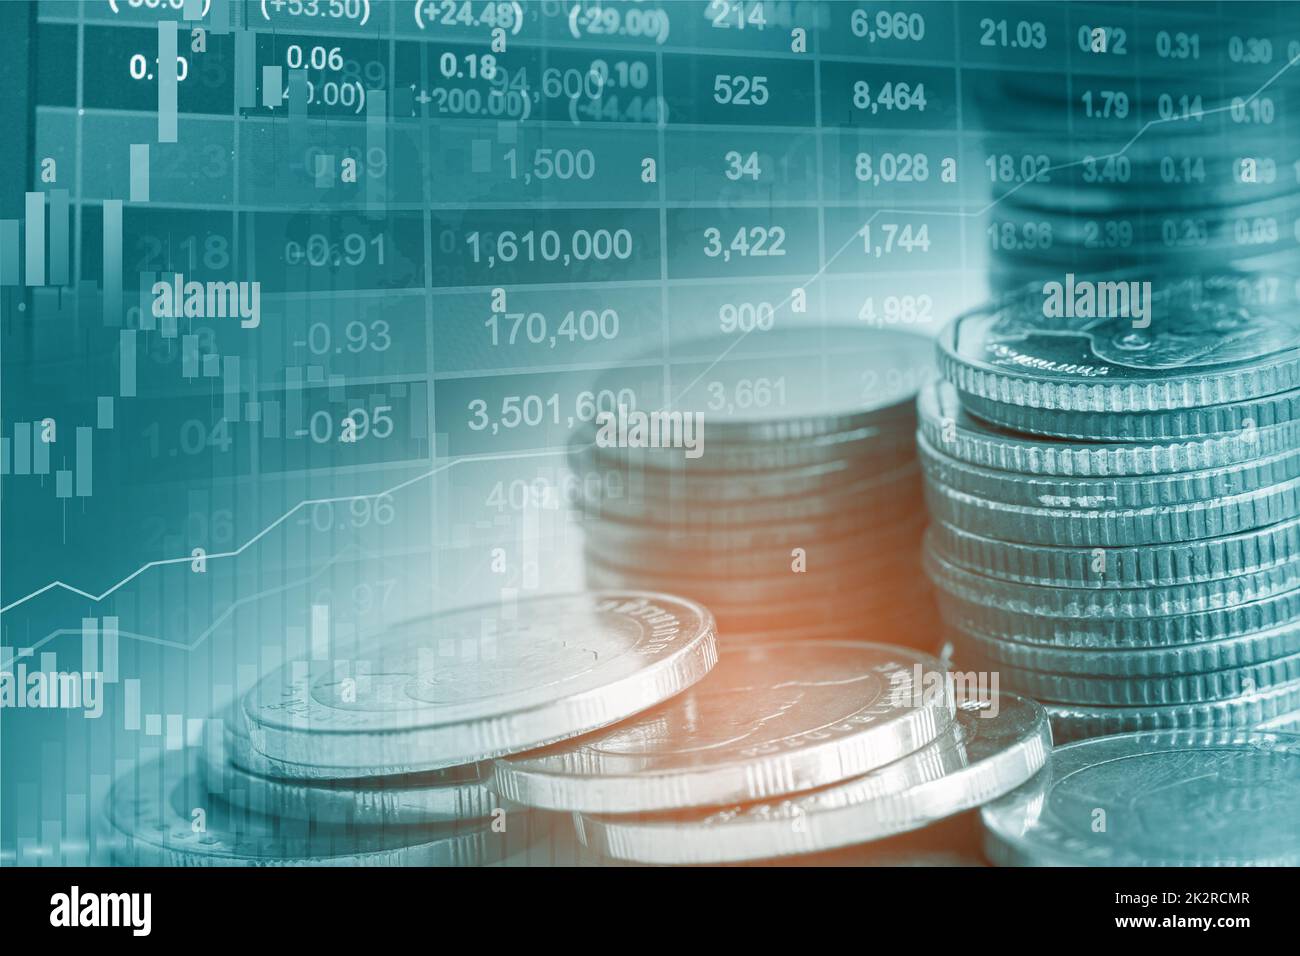 En bourse, investissement financier, commercial et de monnaie ou carte graphique pour analyser les bénéfices de Forex finance business des données sur les tendances de fond. Banque D'Images